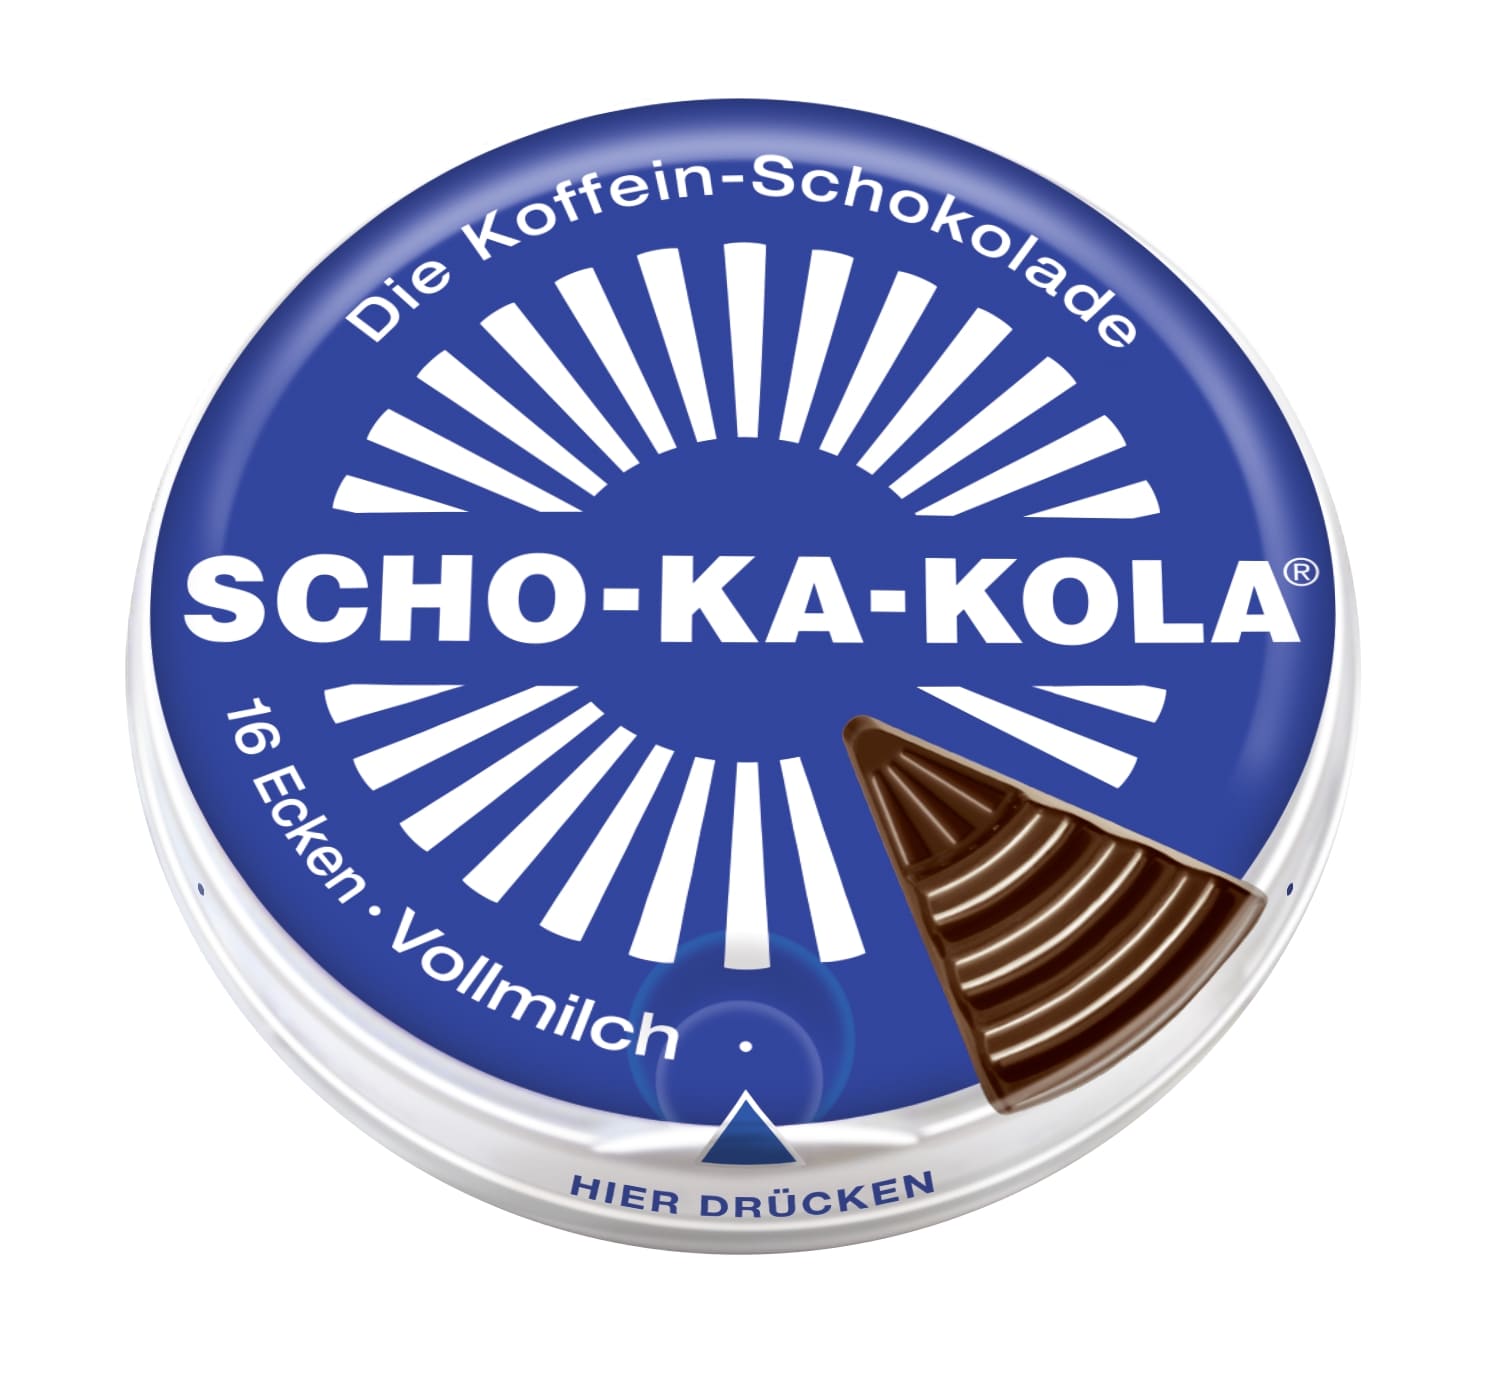 レッドブルのセット ショカコーラ ミルク 100g SCHO-KA-KOLA the caffeine chocolate MILK [正規輸入品] ドイツ 輸入 海外 チョコ コーラナッツ 缶入り カフェイン入り 眠気覚まし カフェイン200